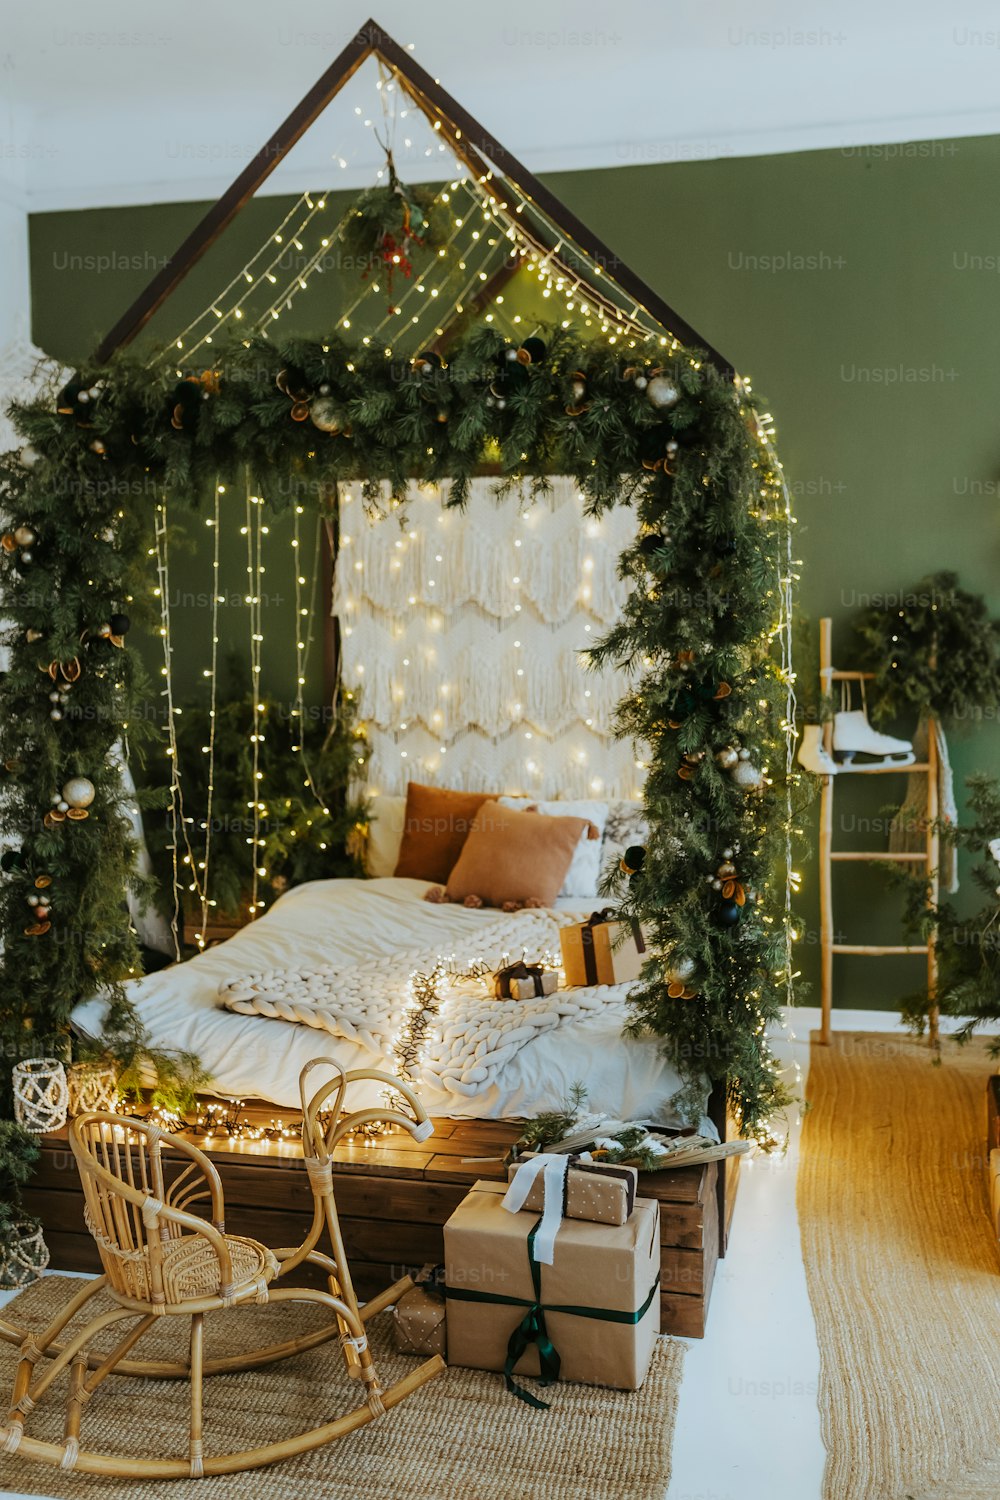 Un dormitorio decorado para Navidad con una cama y un trineo